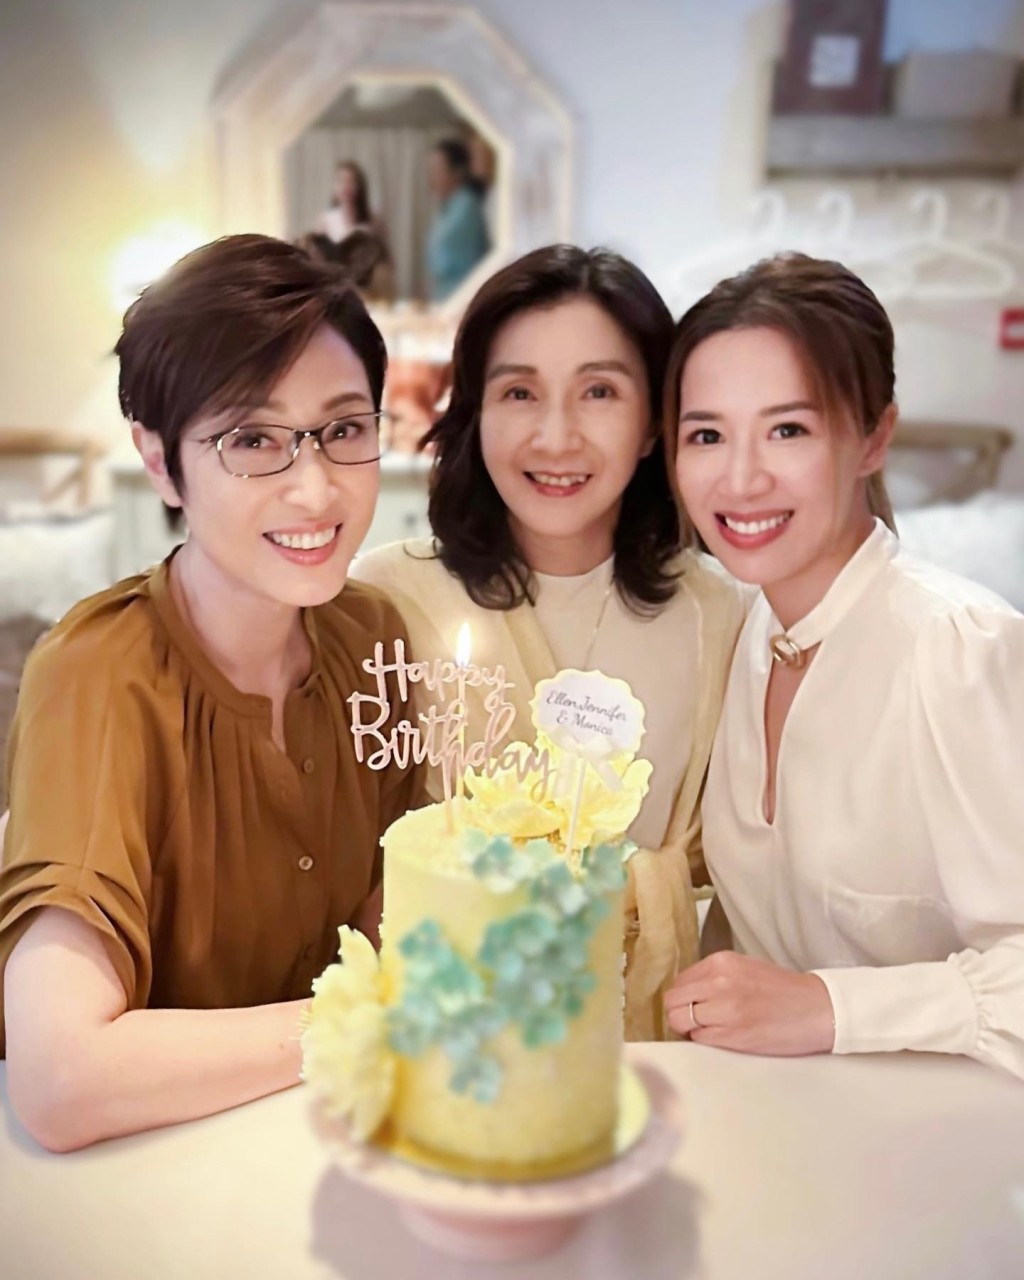 岑杏賢與兩位港姐前輩師姊慶祝生日。